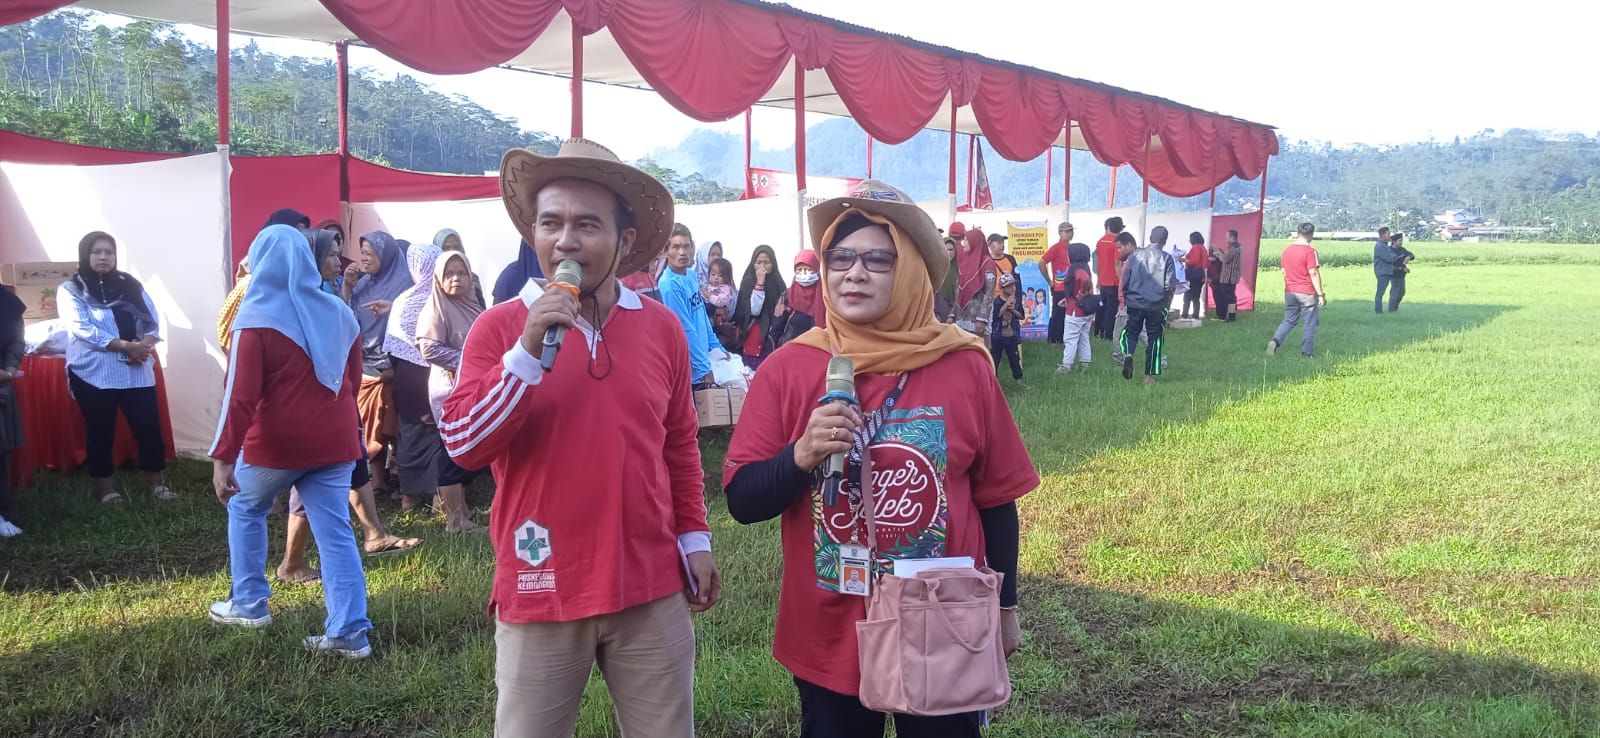 Duo Host Pasar Murah Ramdhan Dian Sulistiono (Banjarnegaraku.com) dan Bangun Eni Mulyanti (Dinkominfo Purbalingga)